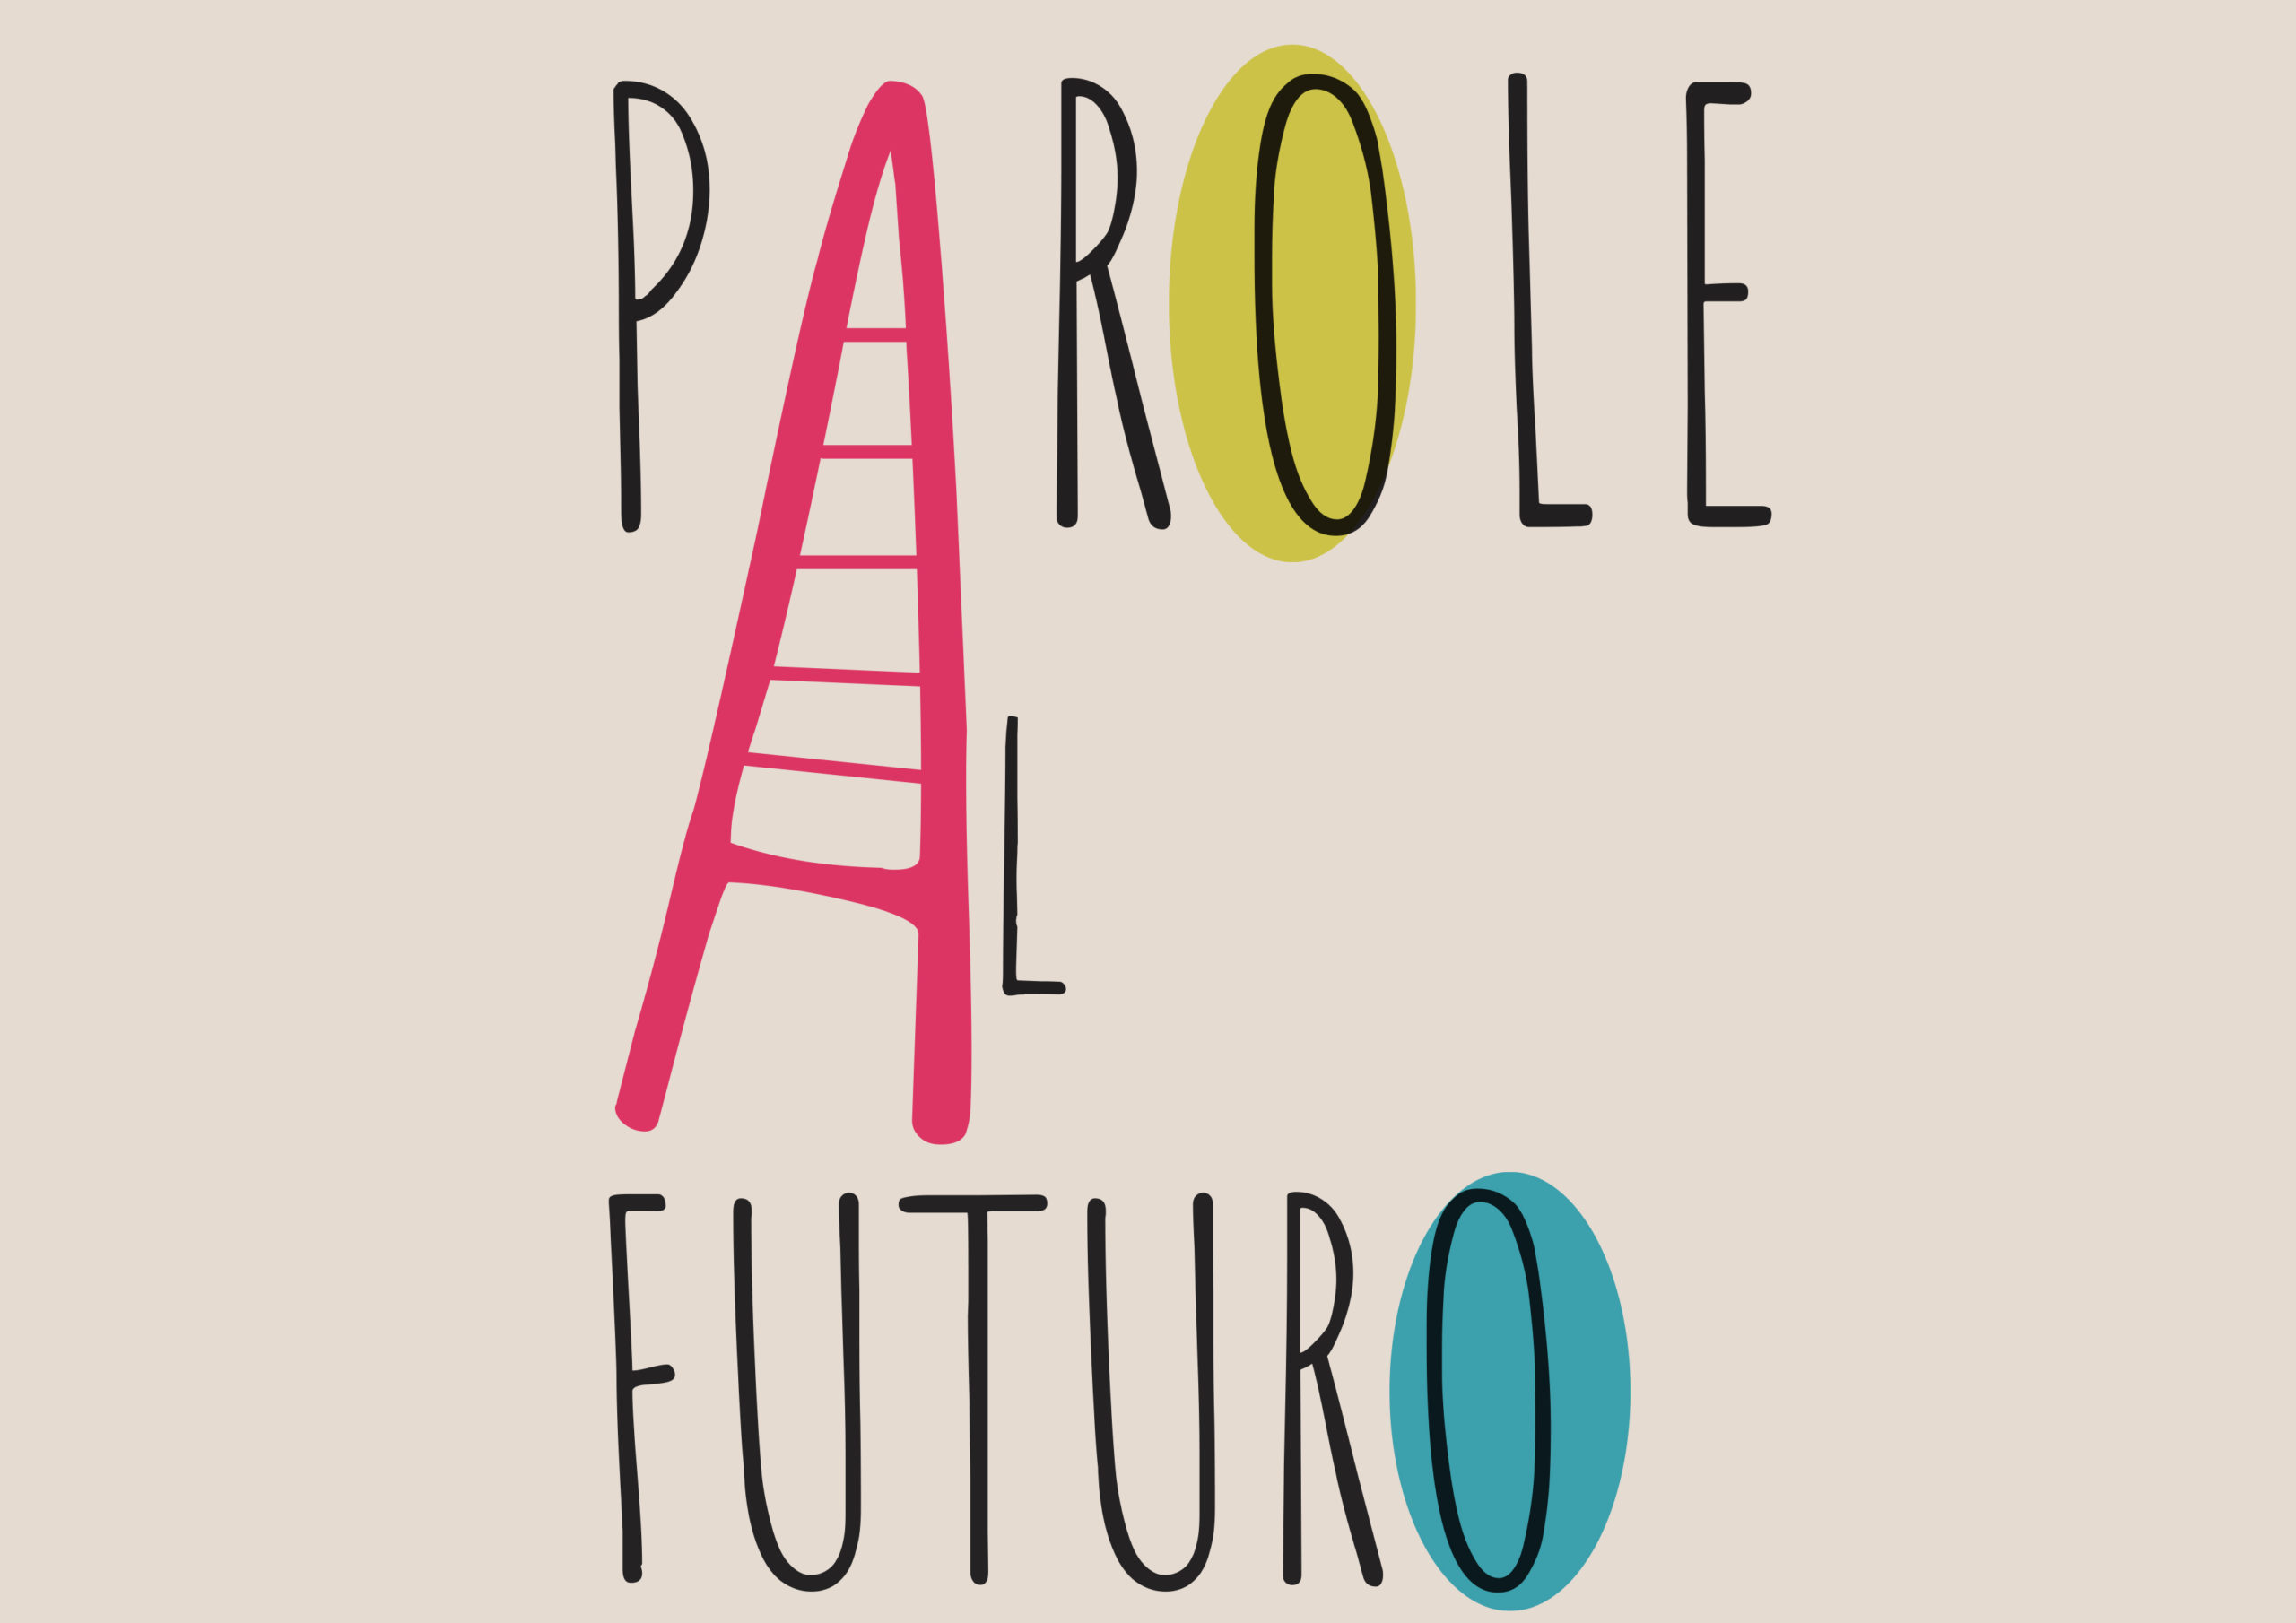 Call: PAROLE AL FUTURO